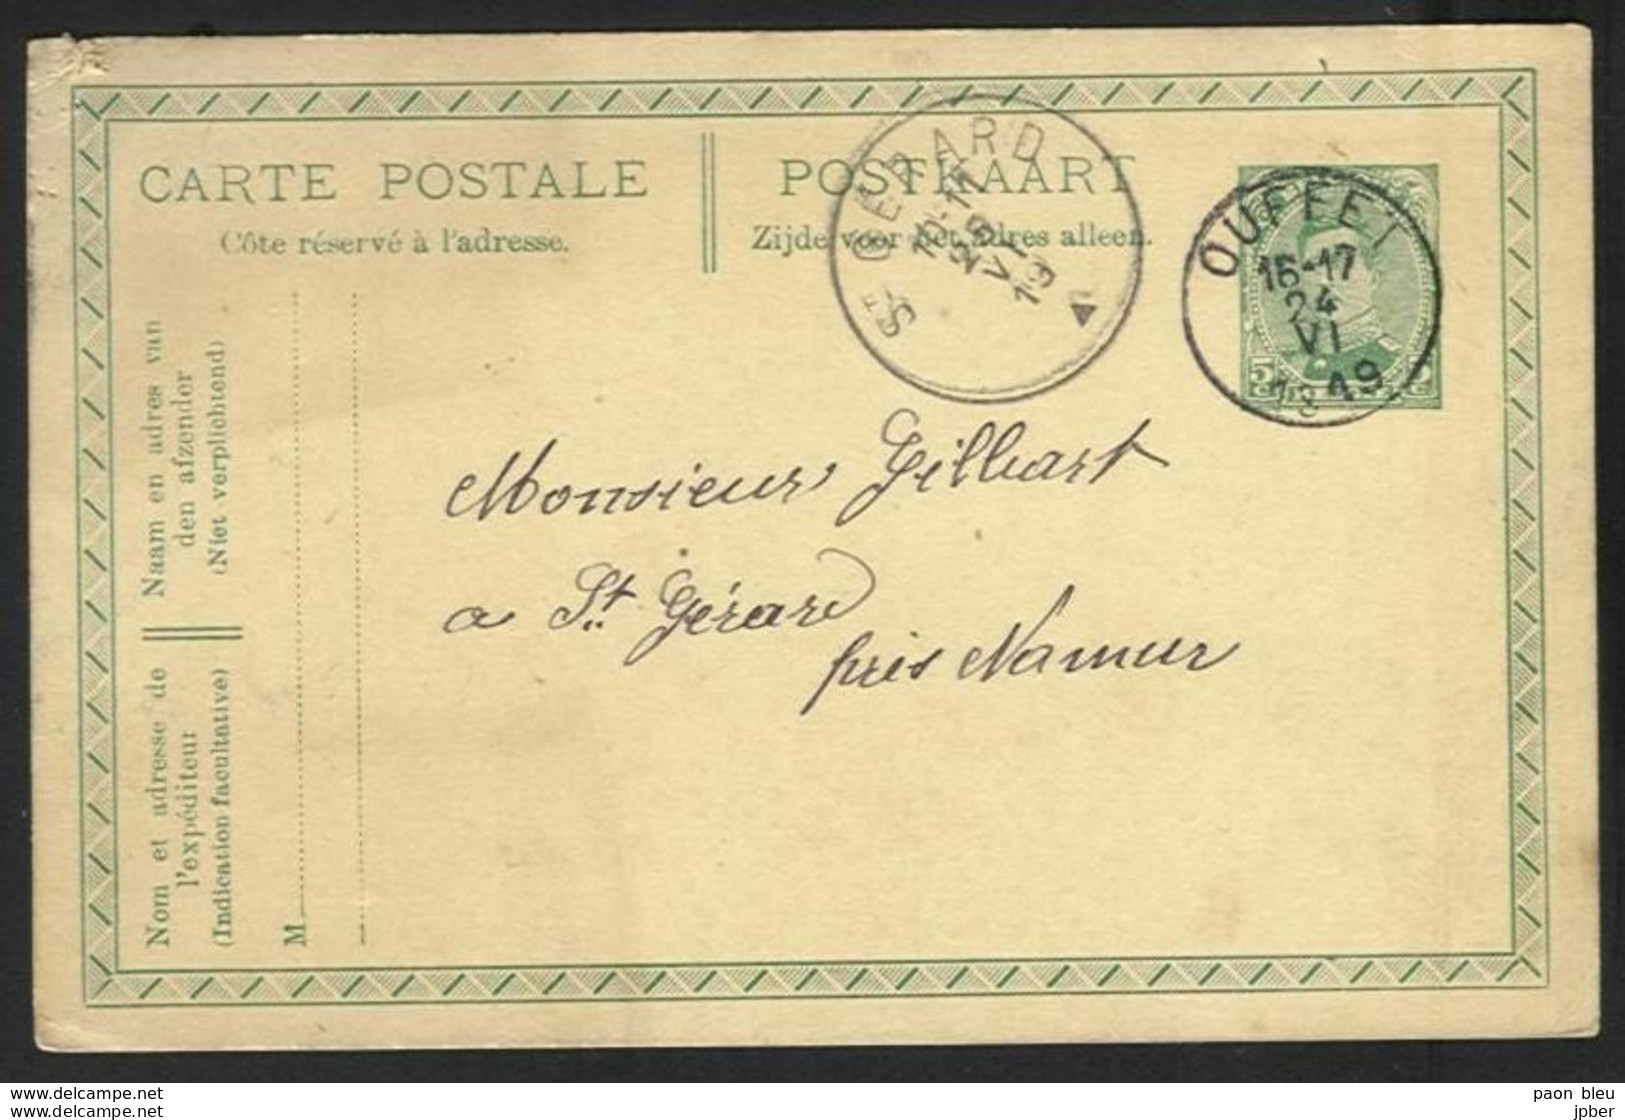 Belgique - Obl.fortune 1919 - Obl. OUFFET Siècle Gratté + Cachet St Gérard - Fortune (1919)